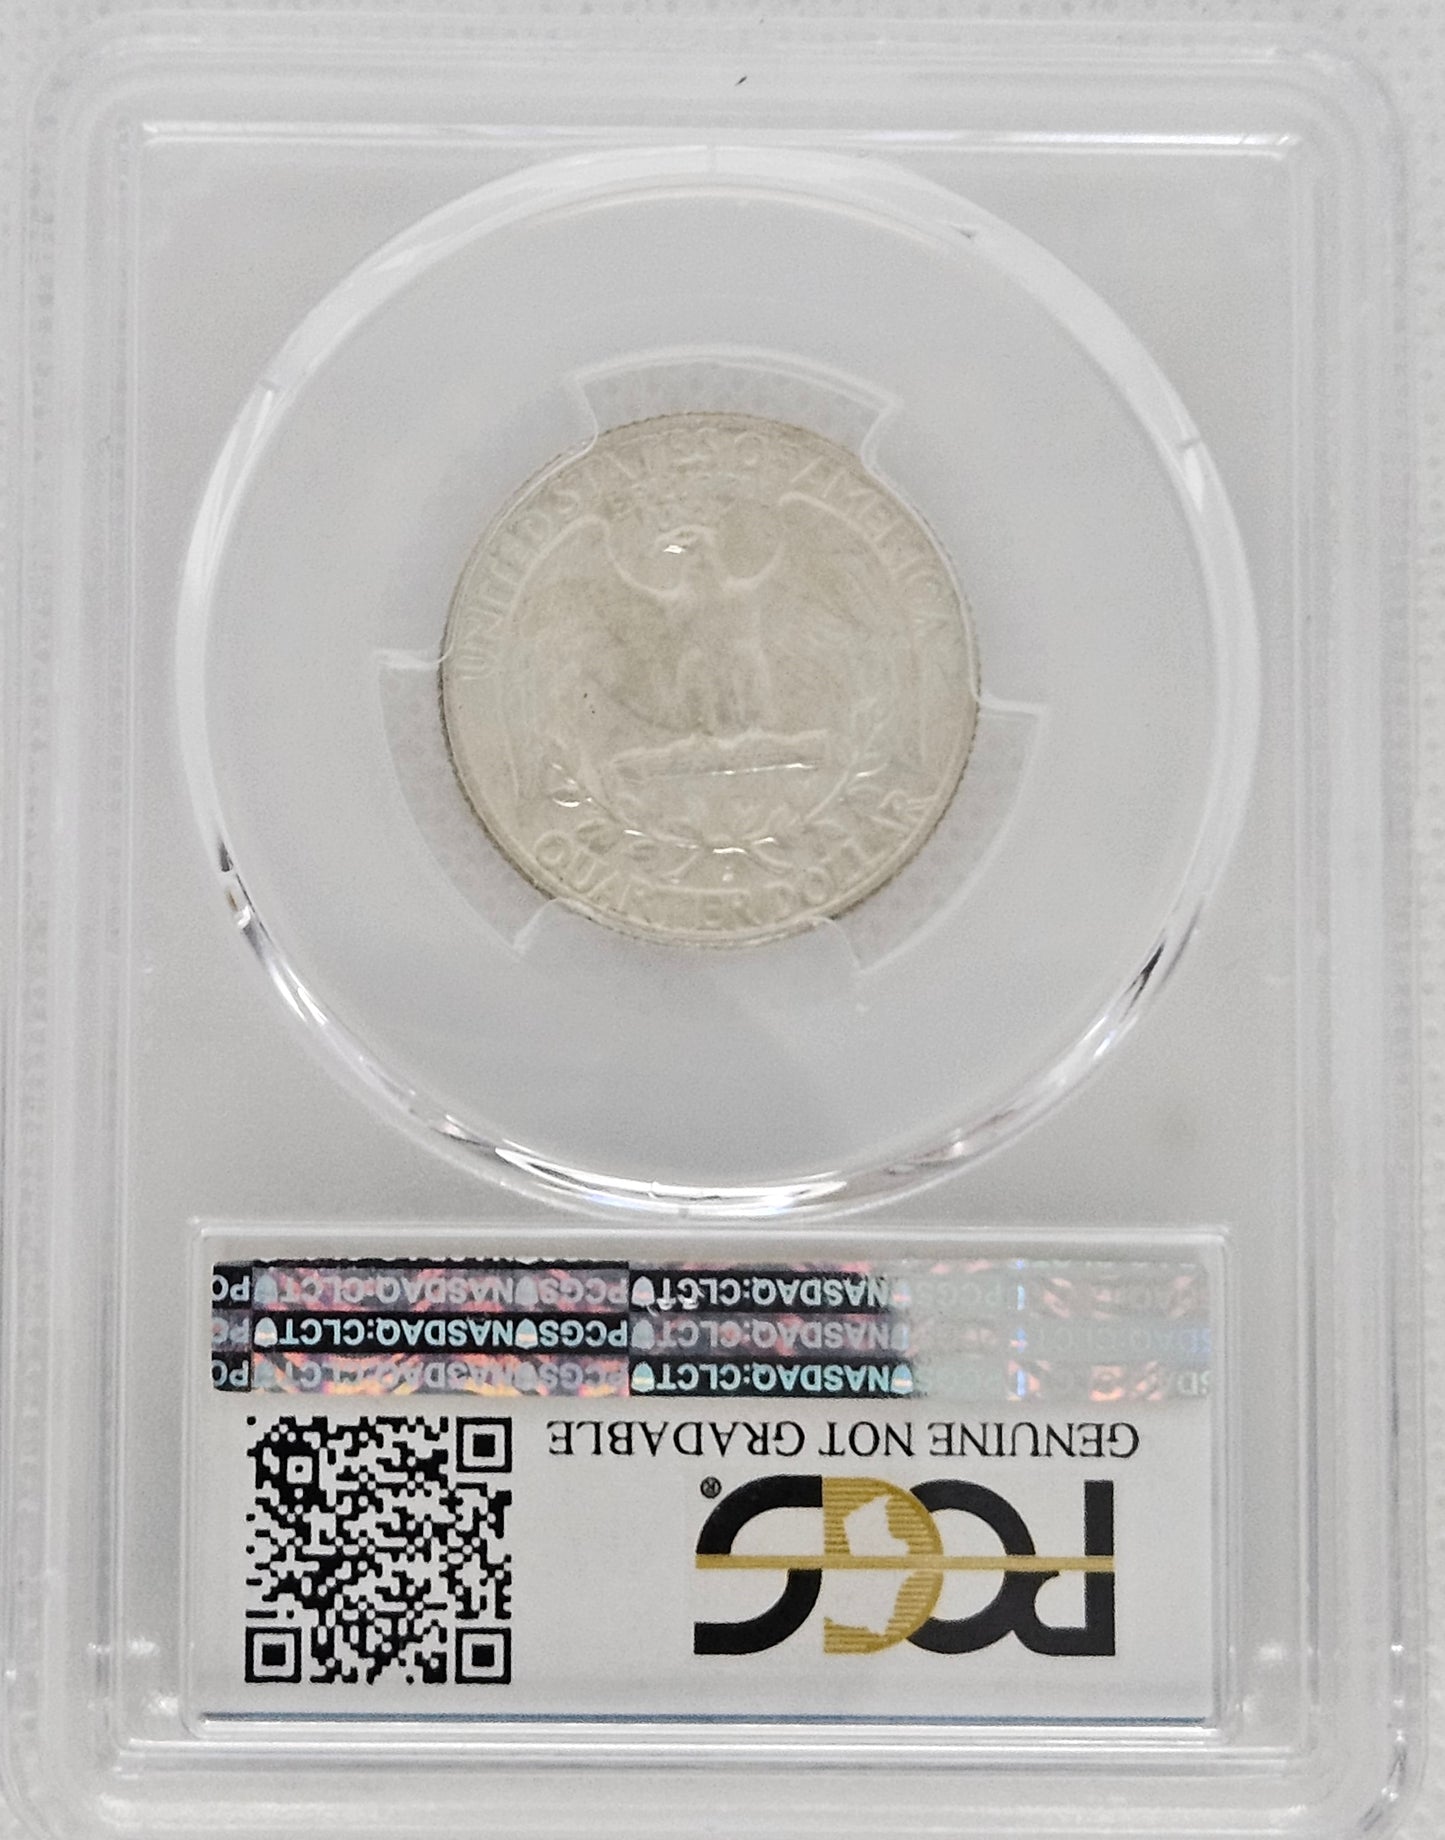 1953-D Washington Quarter PCGS UNC Details  Genuine Graded Coin!!